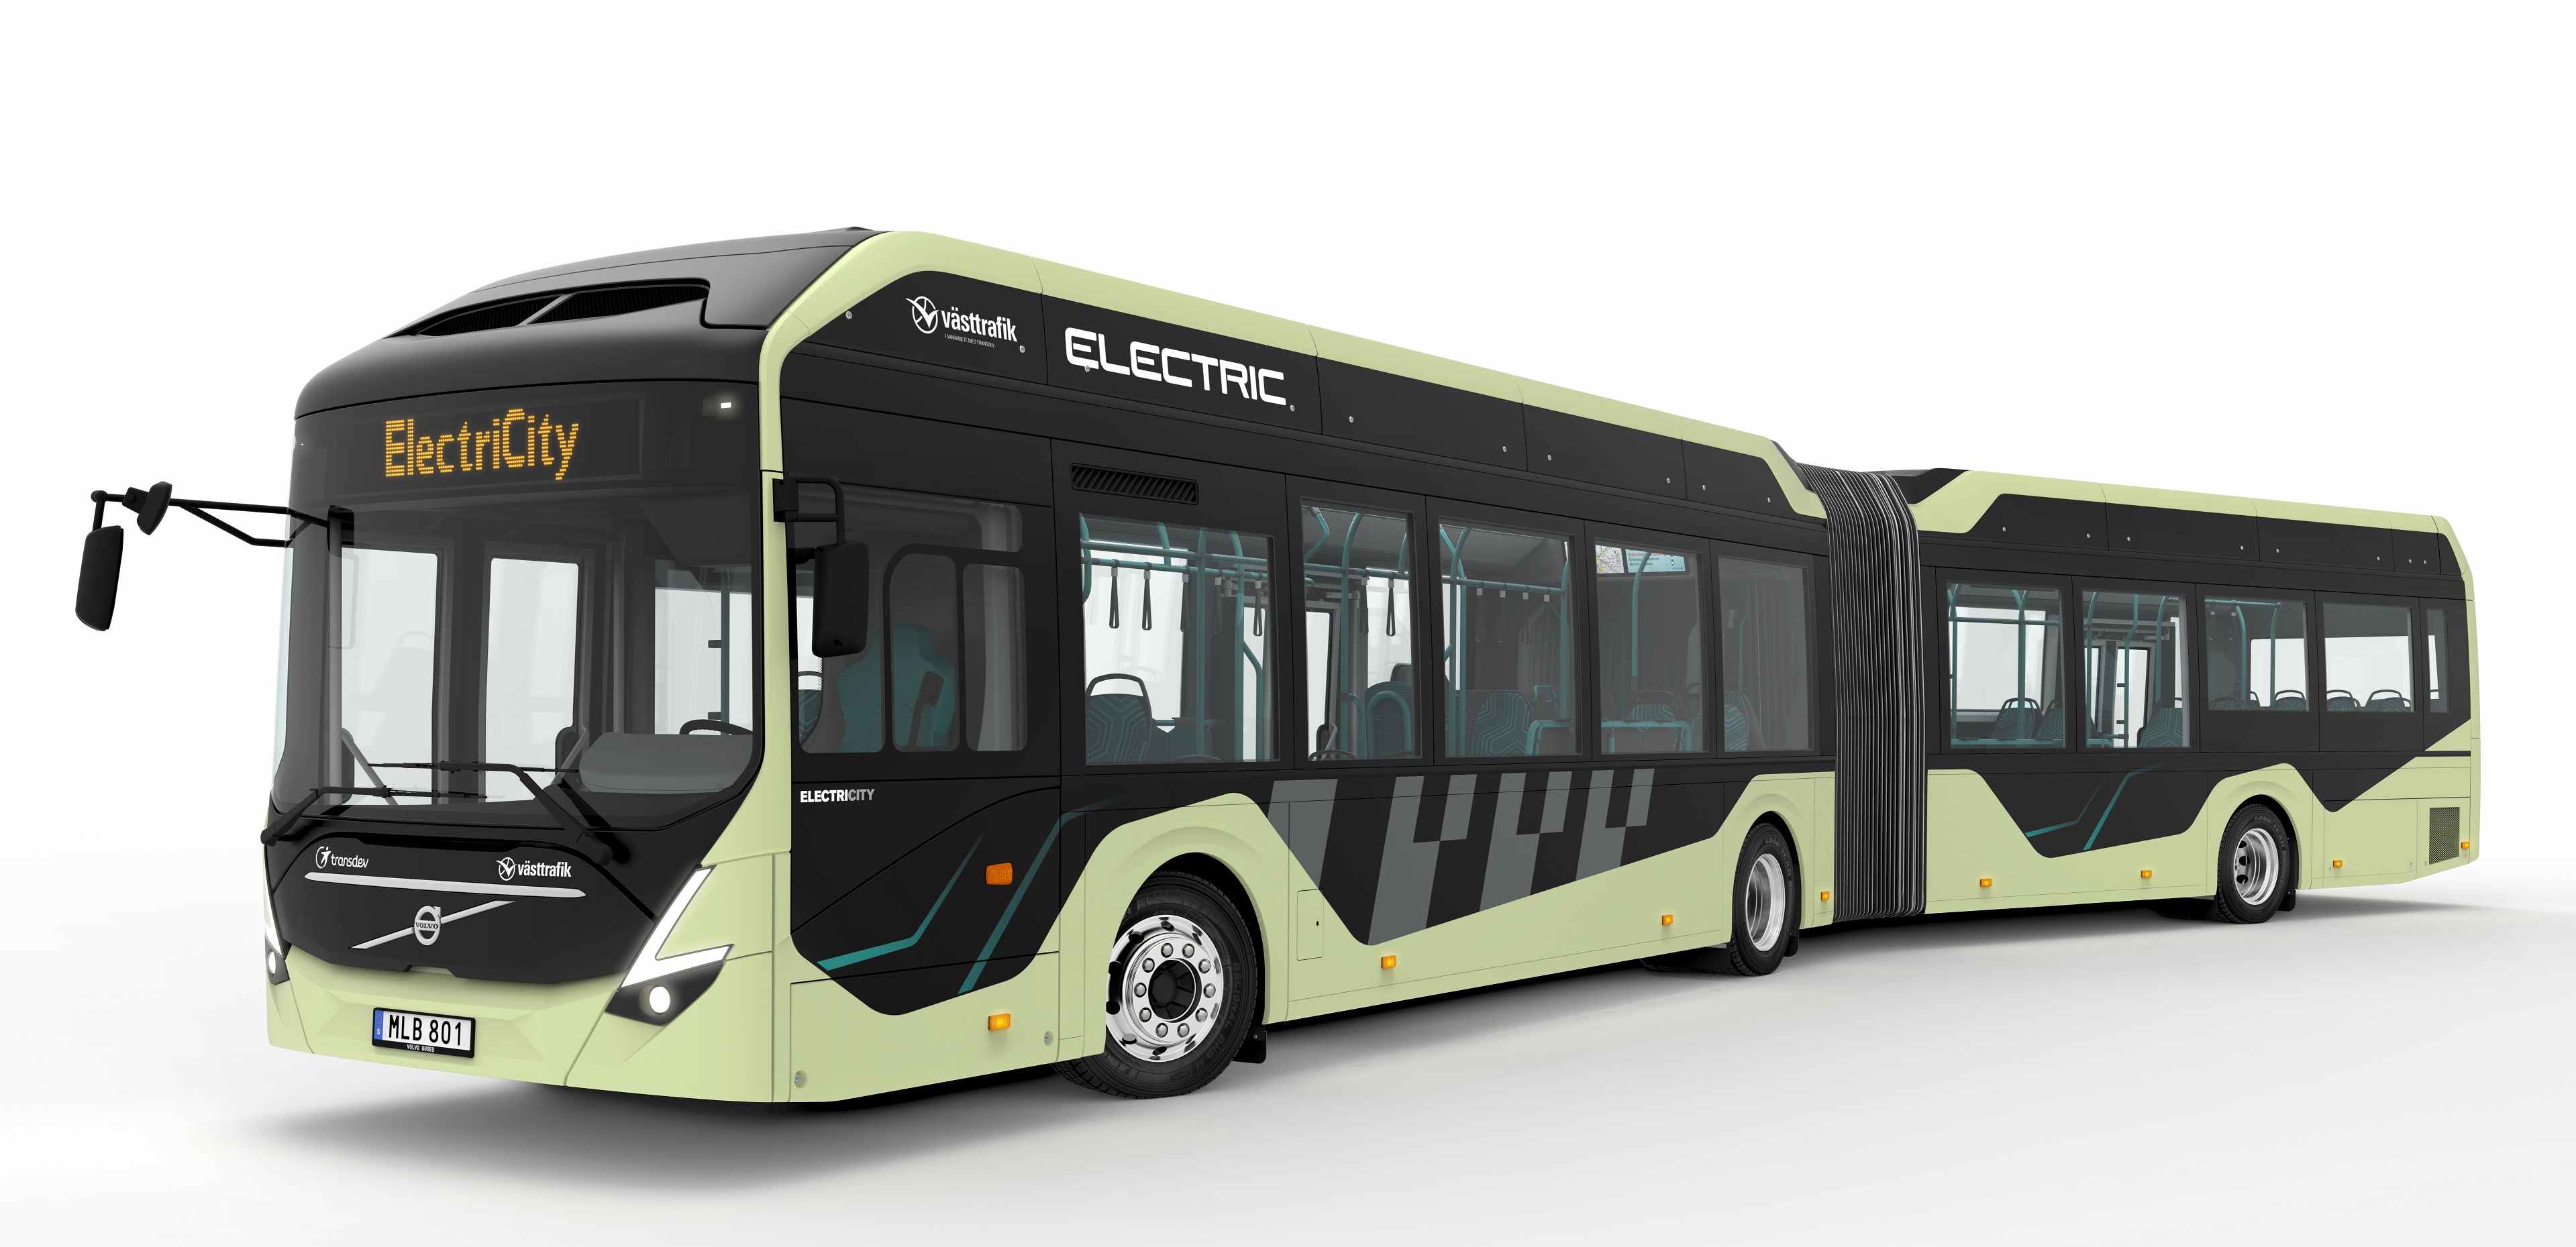 Τα νέα αρθρωτά ηλεκτρικά λεωφορεία της Volvo, έχουν μήκος 18,7 μέτρων και μπορούν να μεταφέρουν μέχρι και 135 επιβάτες, από τους οποίους οι 38 είναι καθήμενοι.